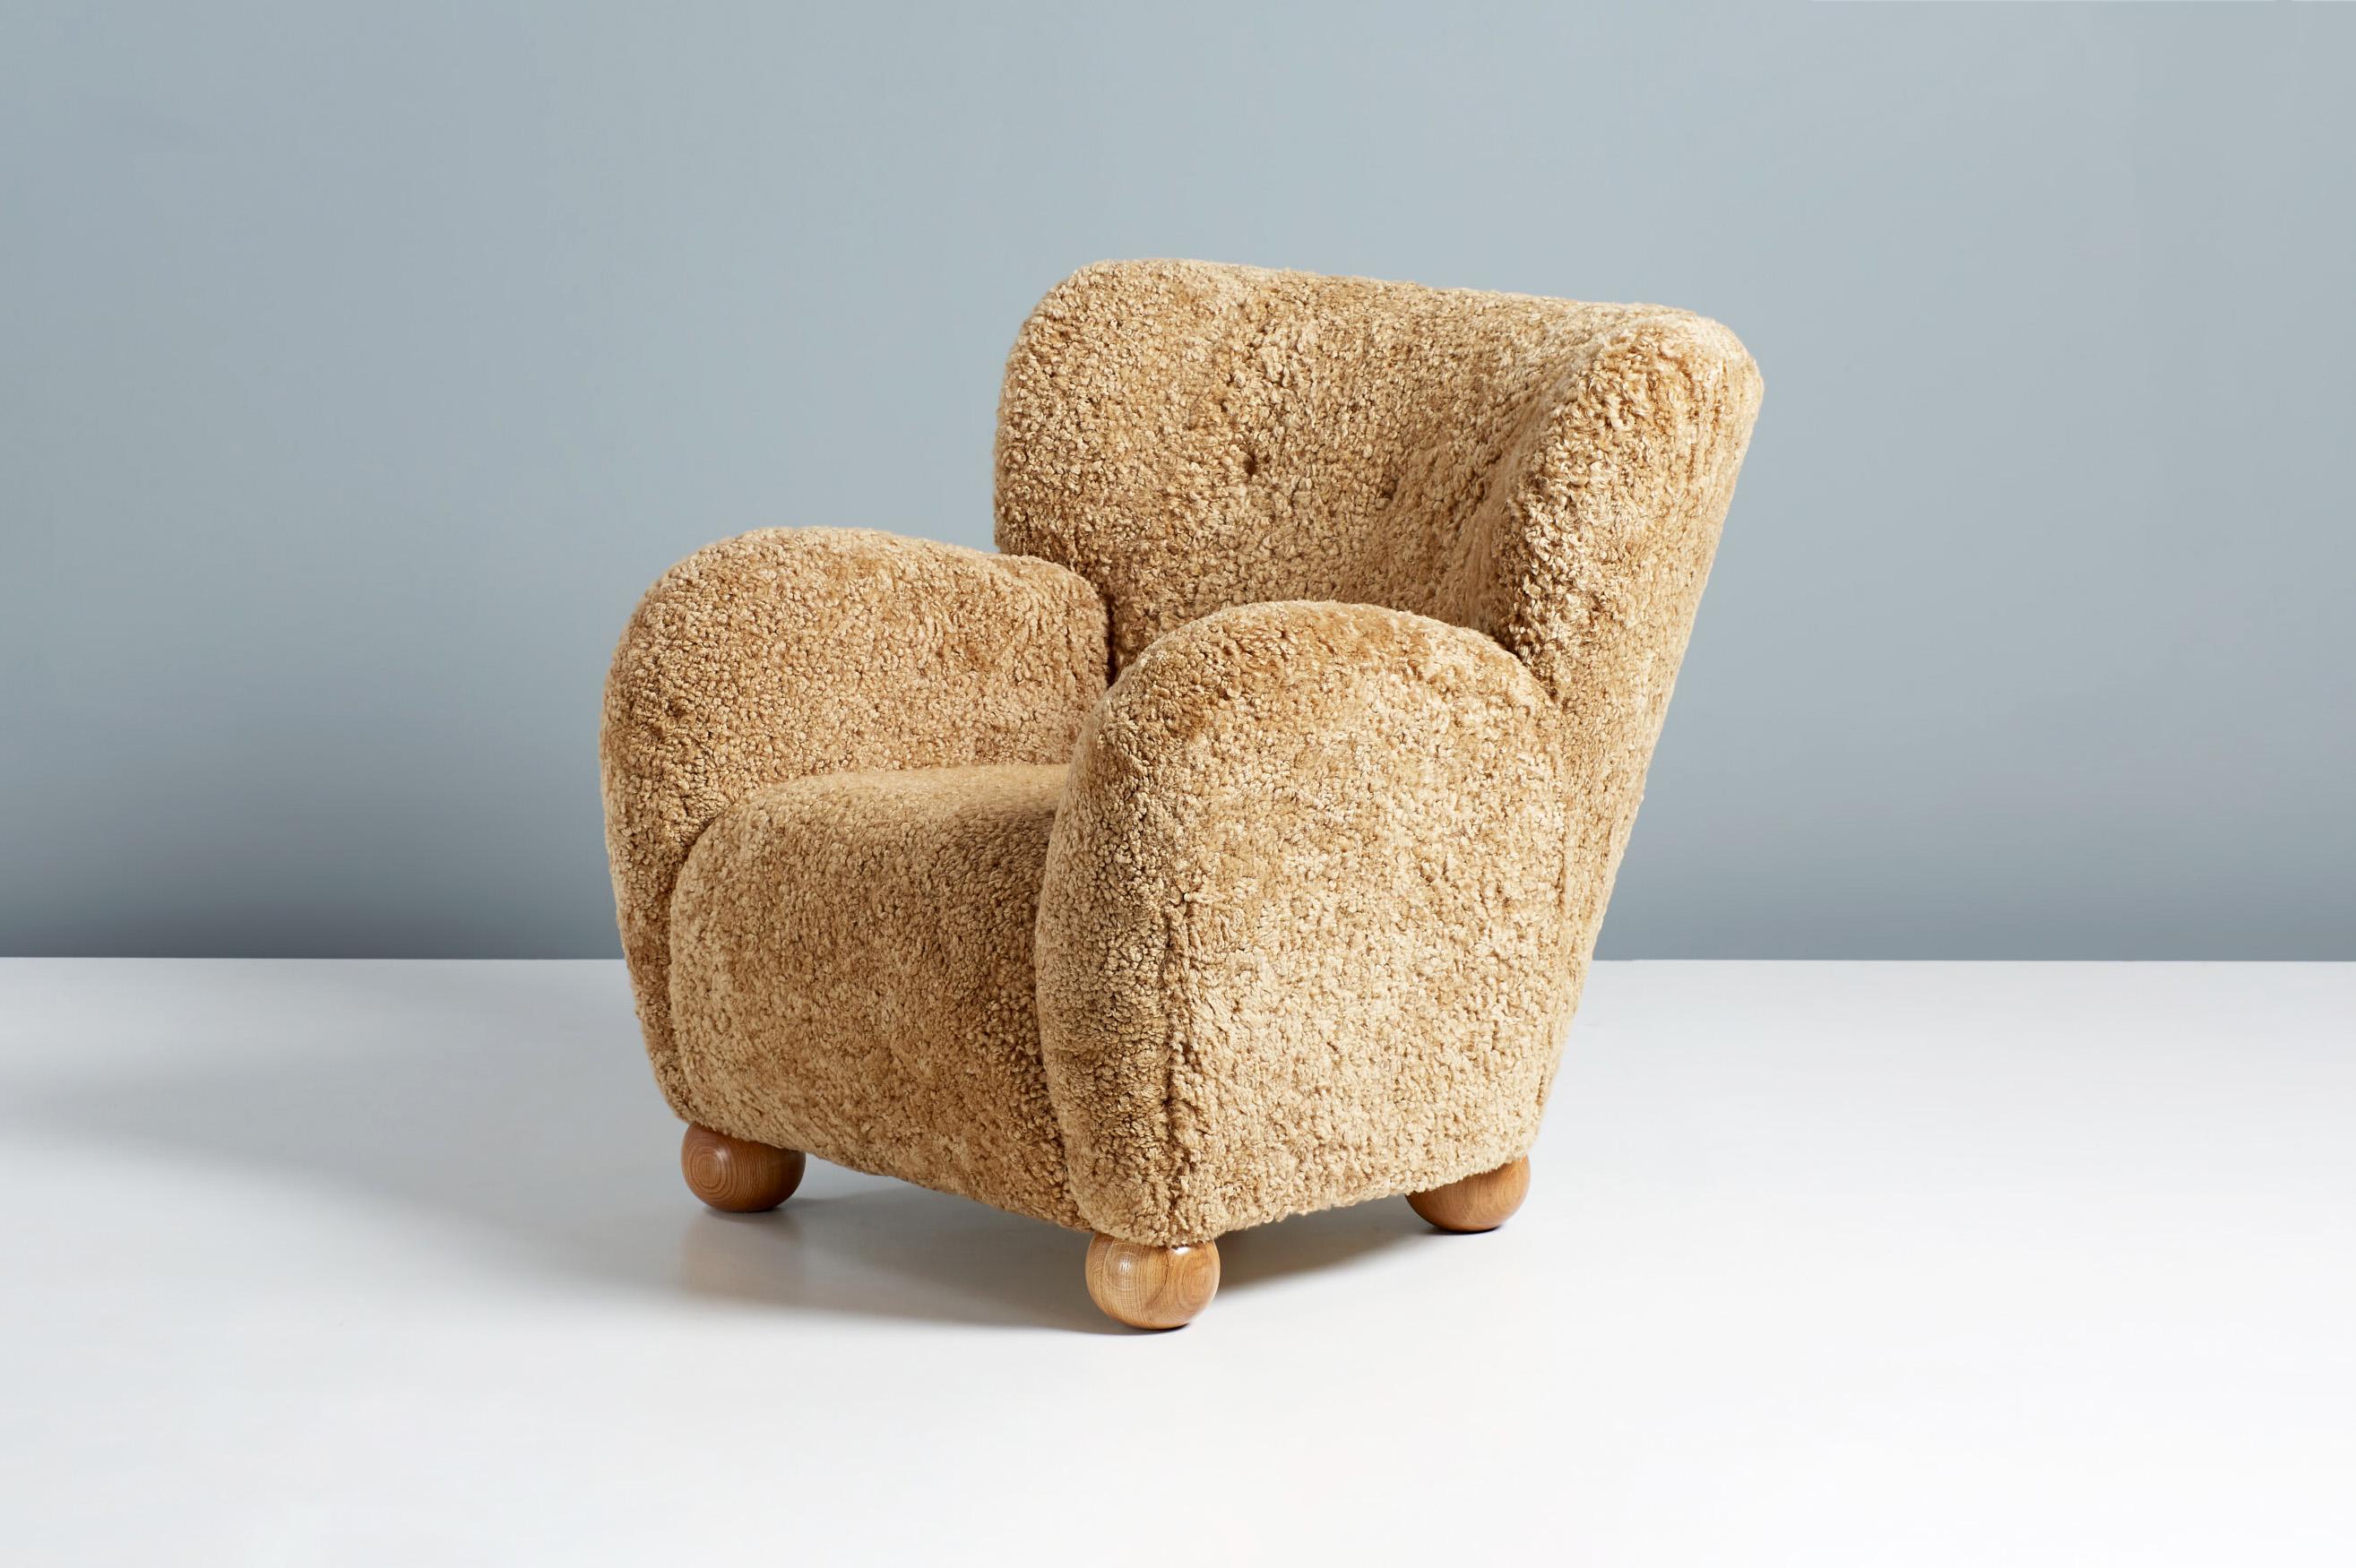 Dagmar design - Sessel Karu

Ein Paar maßgefertigter Loungesessel, die in unseren Werkstätten in London unter Verwendung hochwertigster Materialien entwickelt und hergestellt werden. Diese Exemplare sind mit 'Maple' Shearling gepolstert und haben